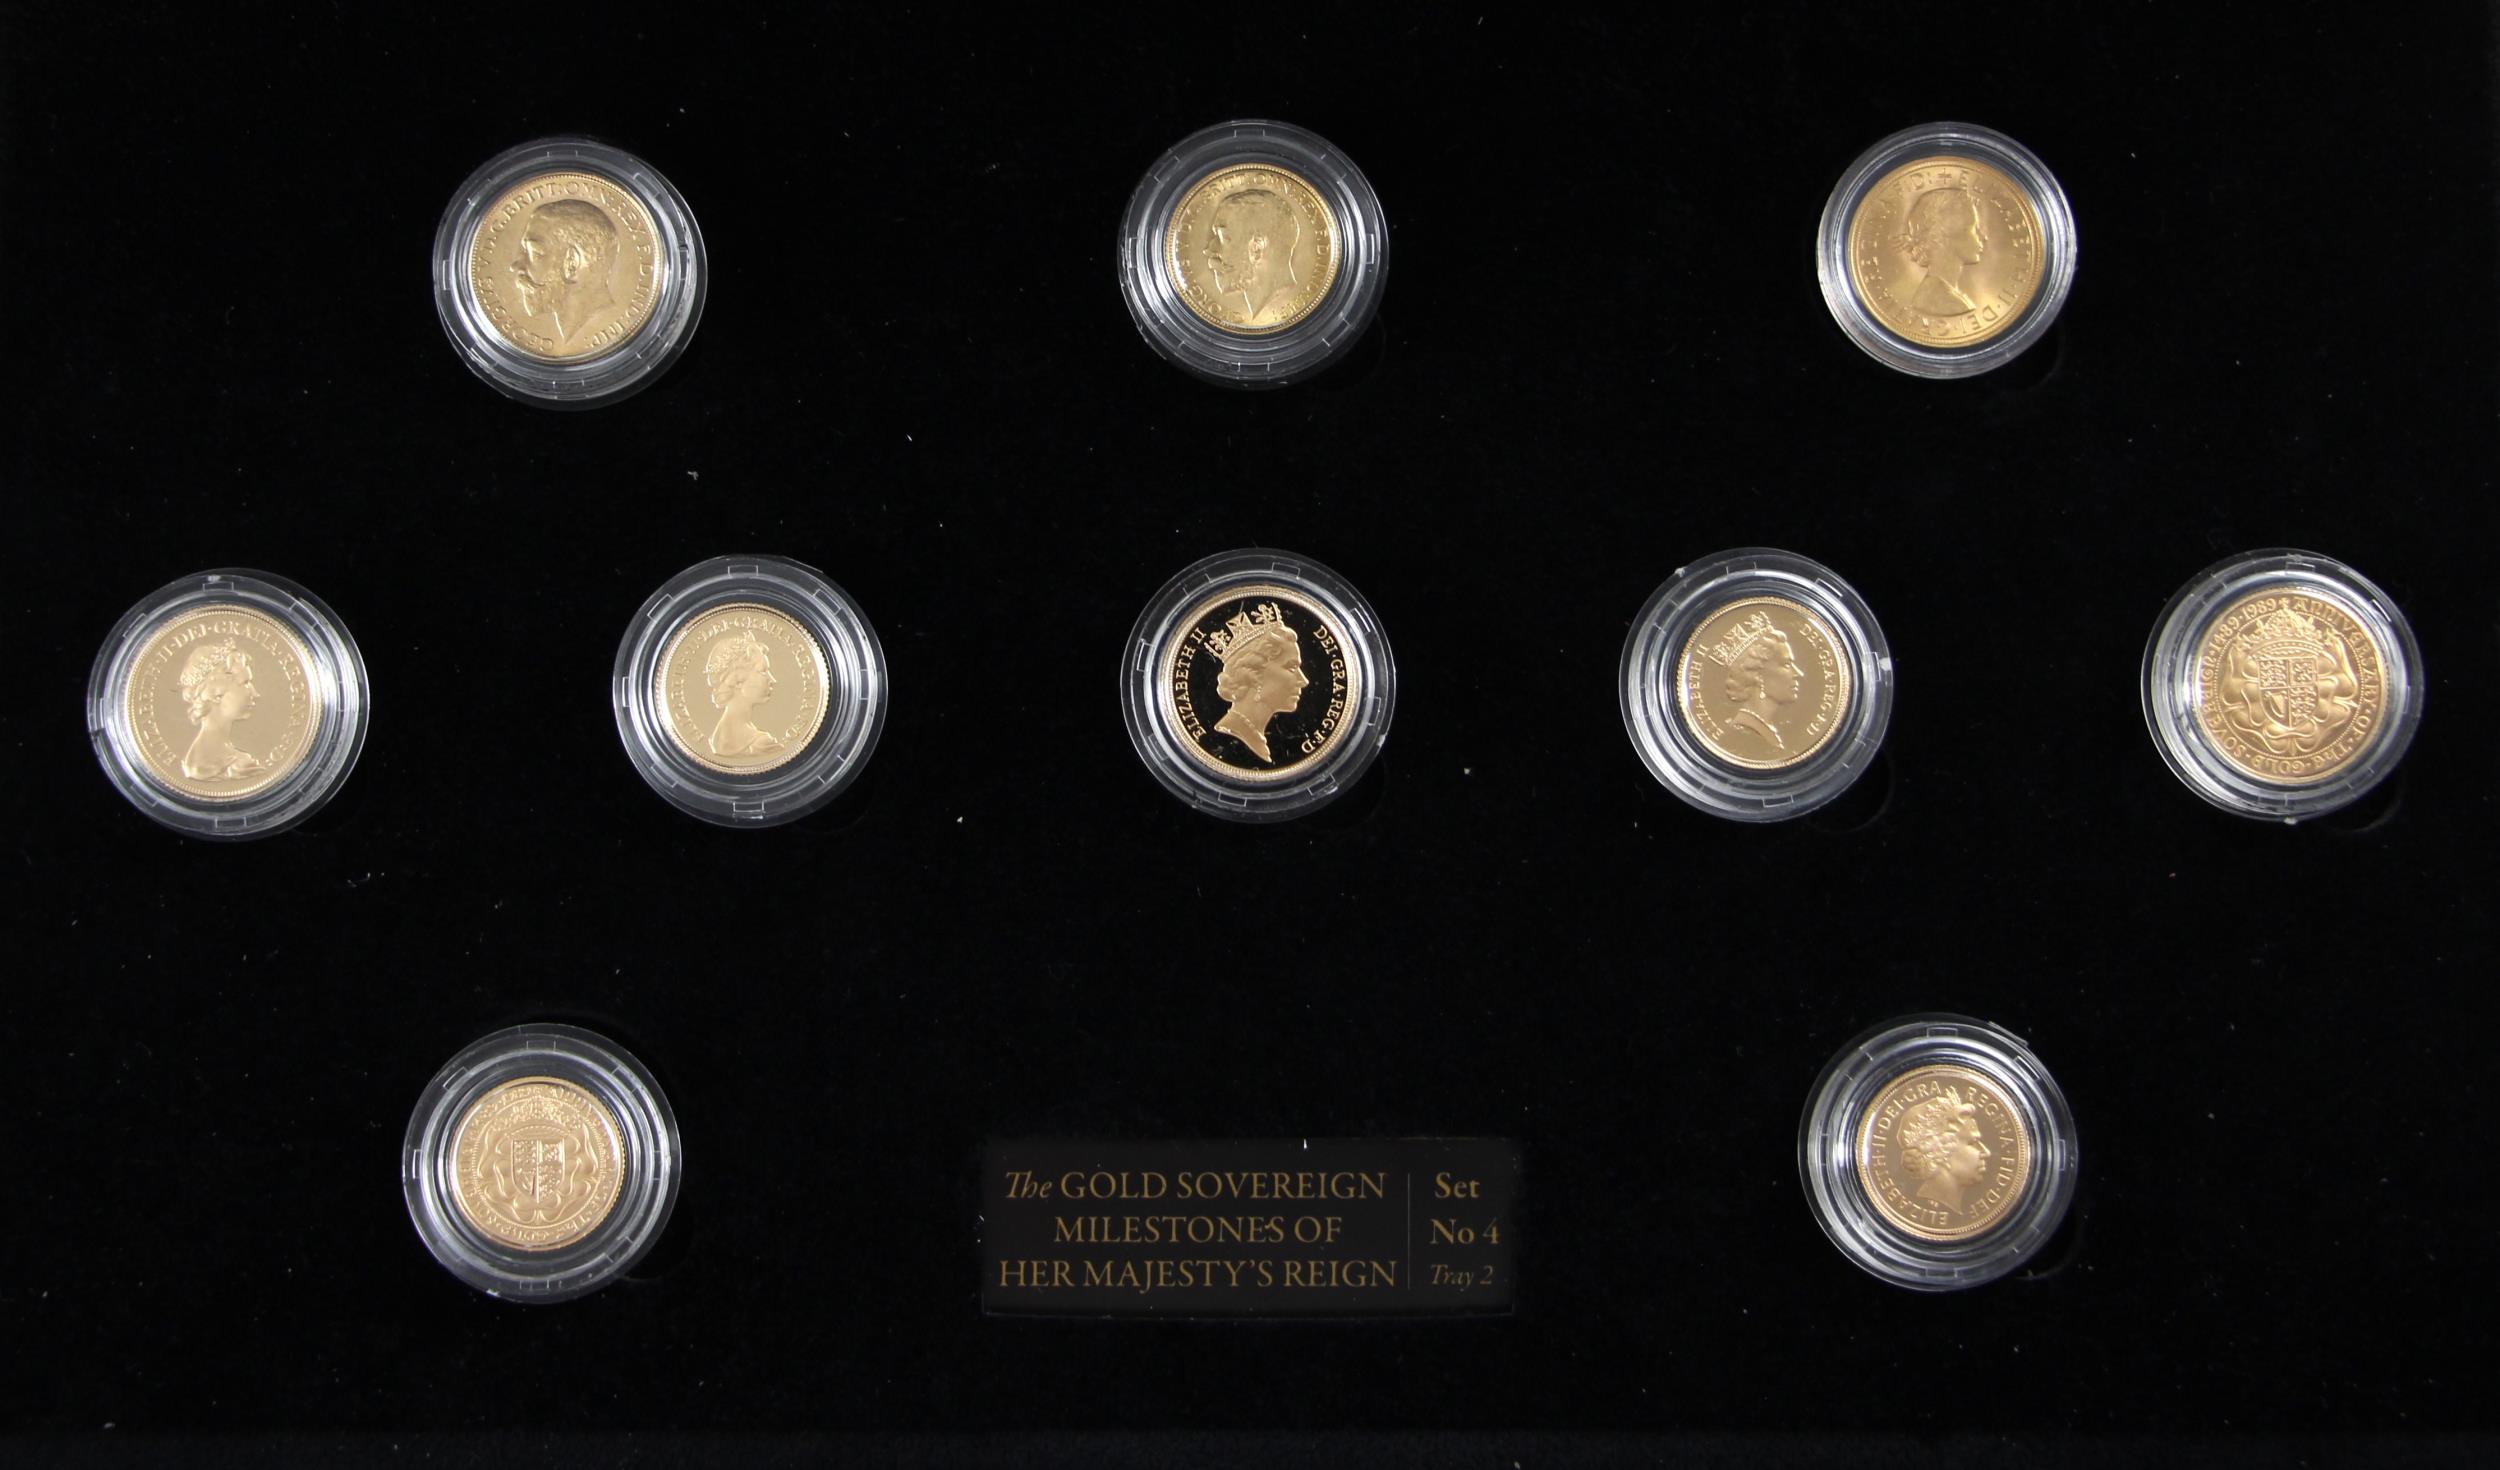 George V - Elizabeth II (1911-2022), The Gold Sovereign Milestones of Her Majesty's Reign set, no.4,